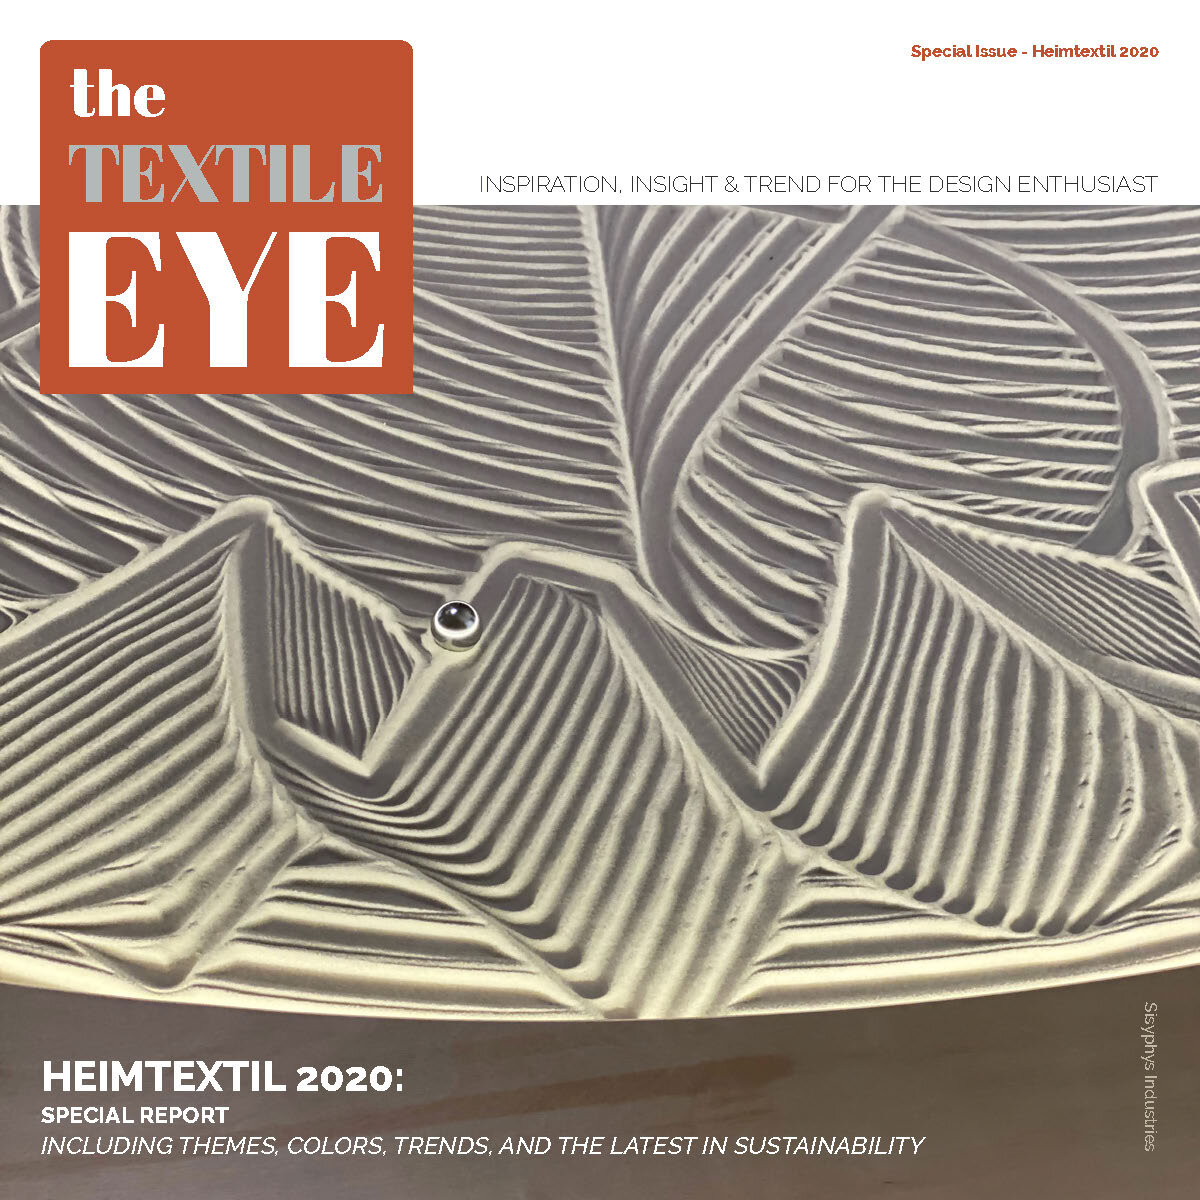 Special Report: Heimtextil 2020